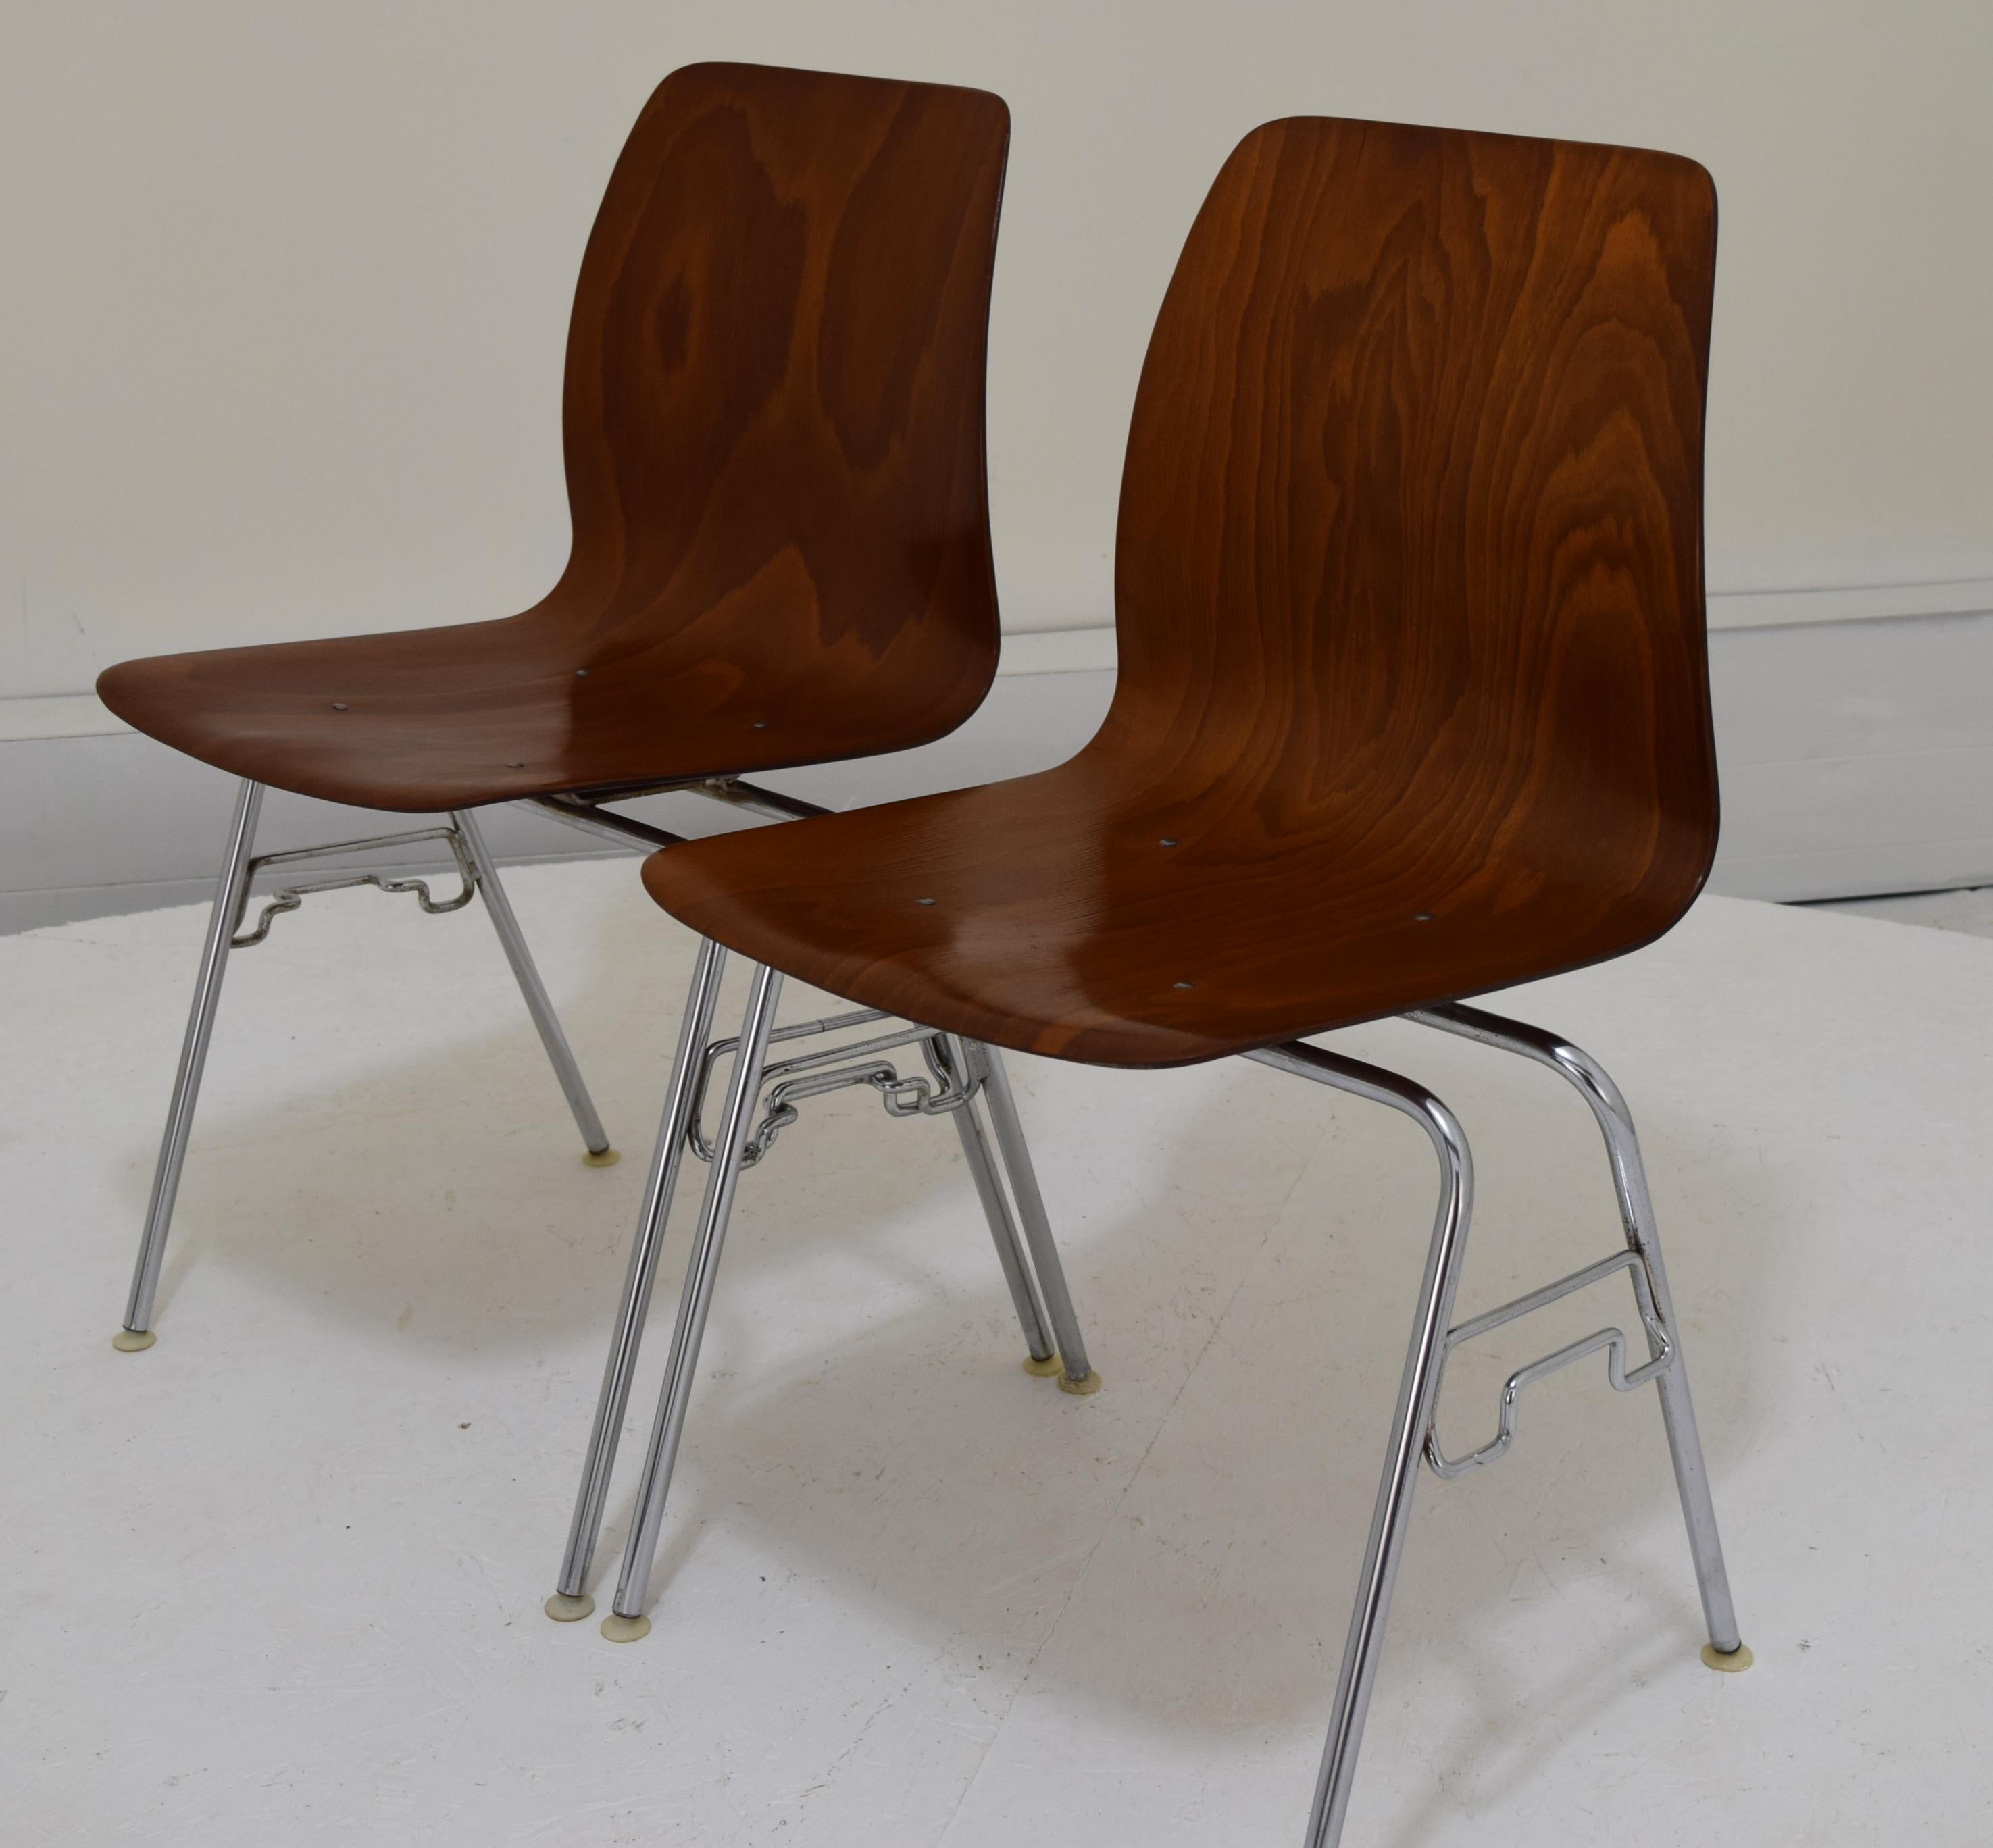 Produites vers la fin des années 1960, début des années 1970, ces chaises sont un modèle peu commun à trouver ici aux États-Unis. Nous avons ce listing pour 12, et un autre listing pour 6 modèles aux tons plus foncés. Les coquilles ont une largeur